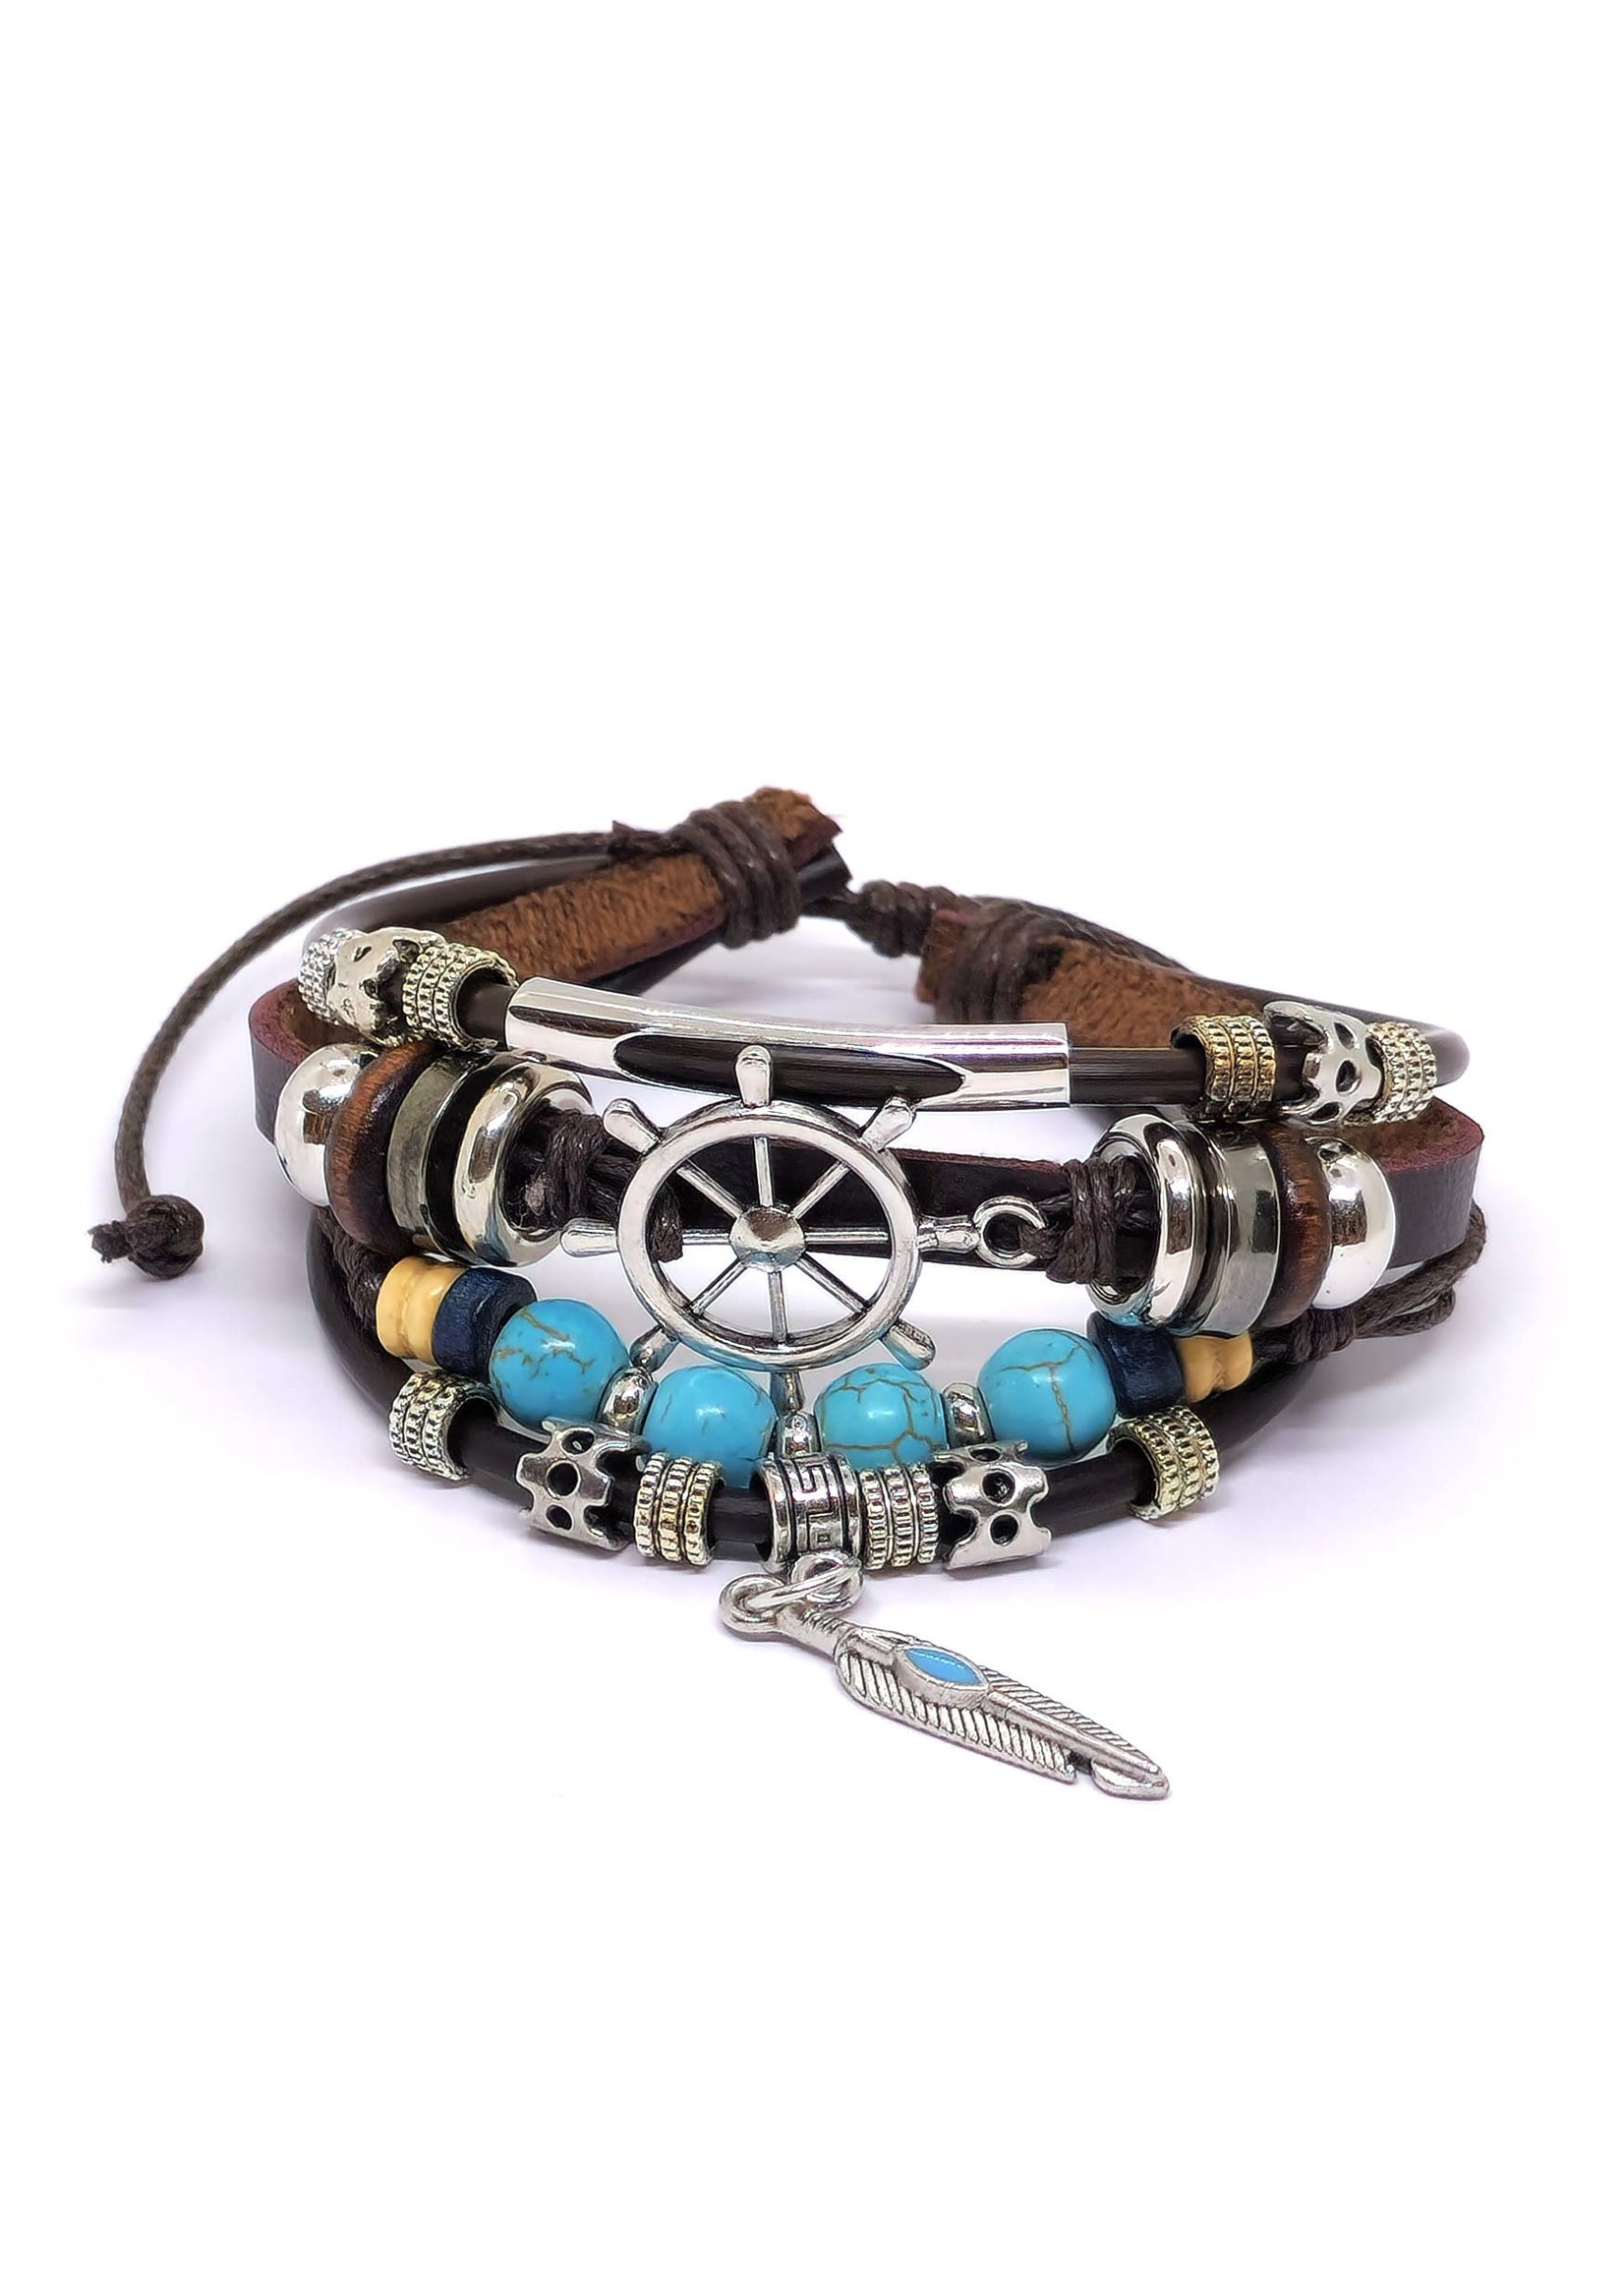 Leather Bracelet Dharma Wheel darkbrown